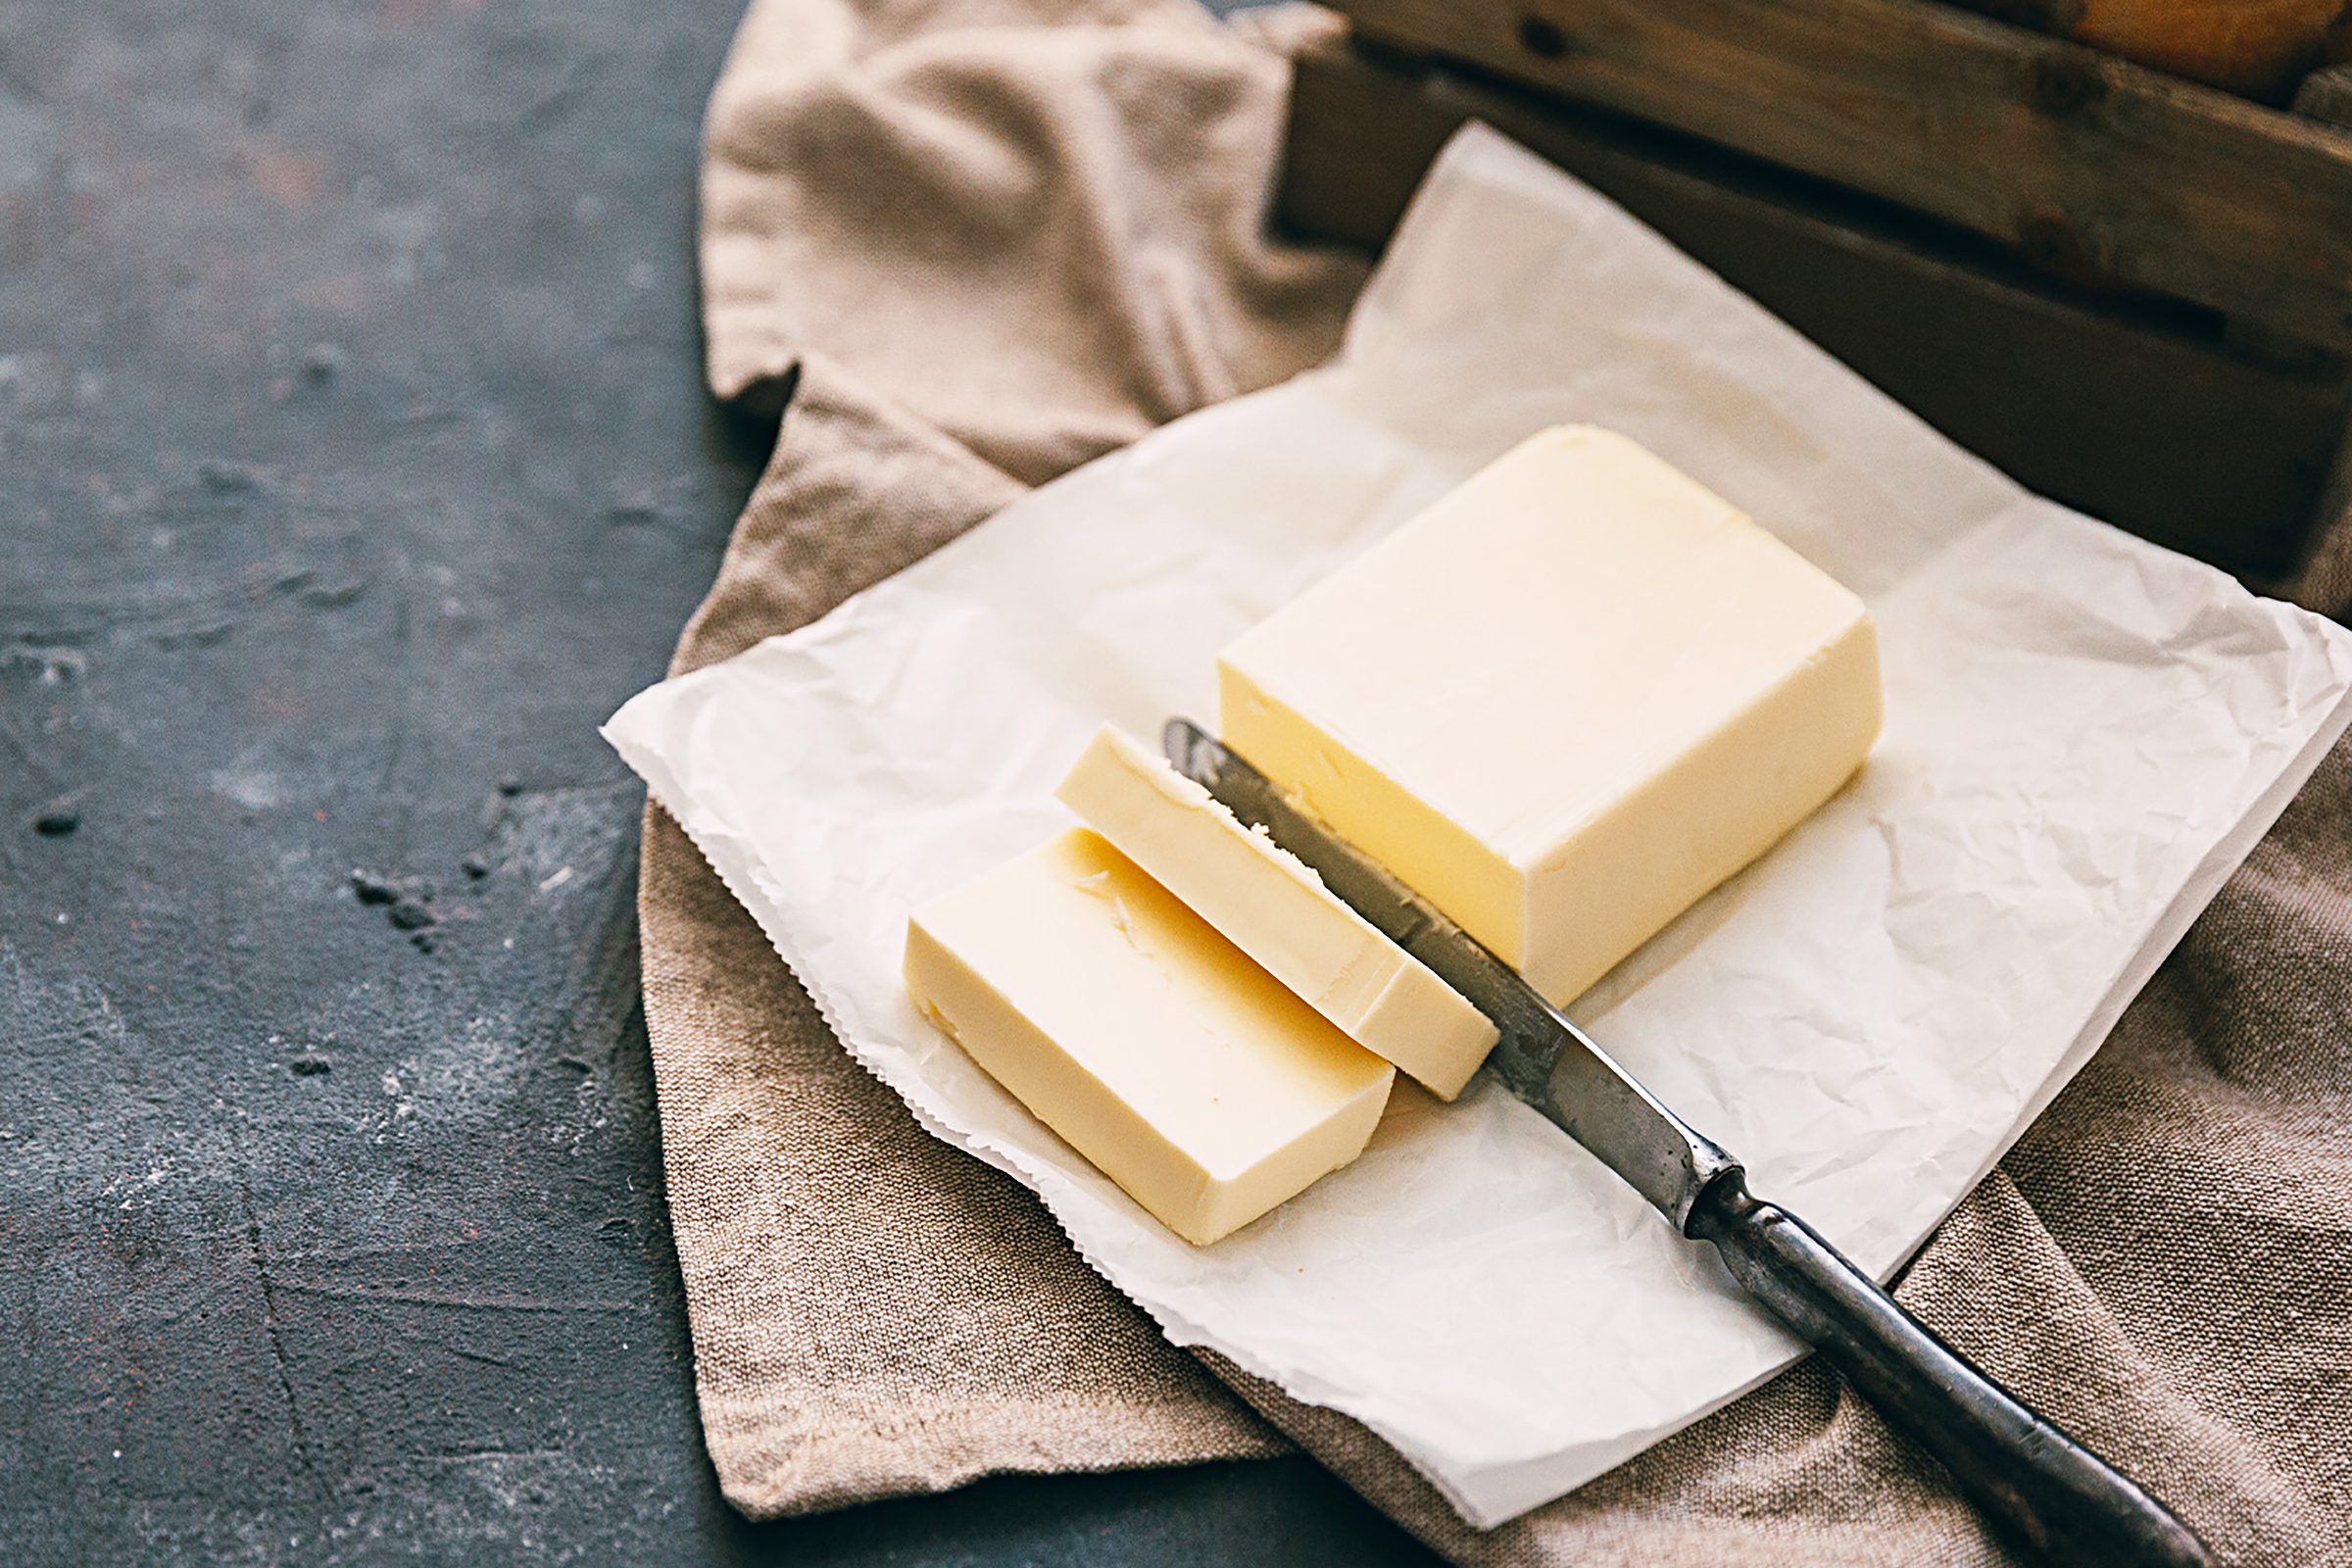 バターの上手な保存方法とは 賞味期限やおいしく使い切るコツを知ろう 雪印北海道バター 雪印メグミルク株式会社